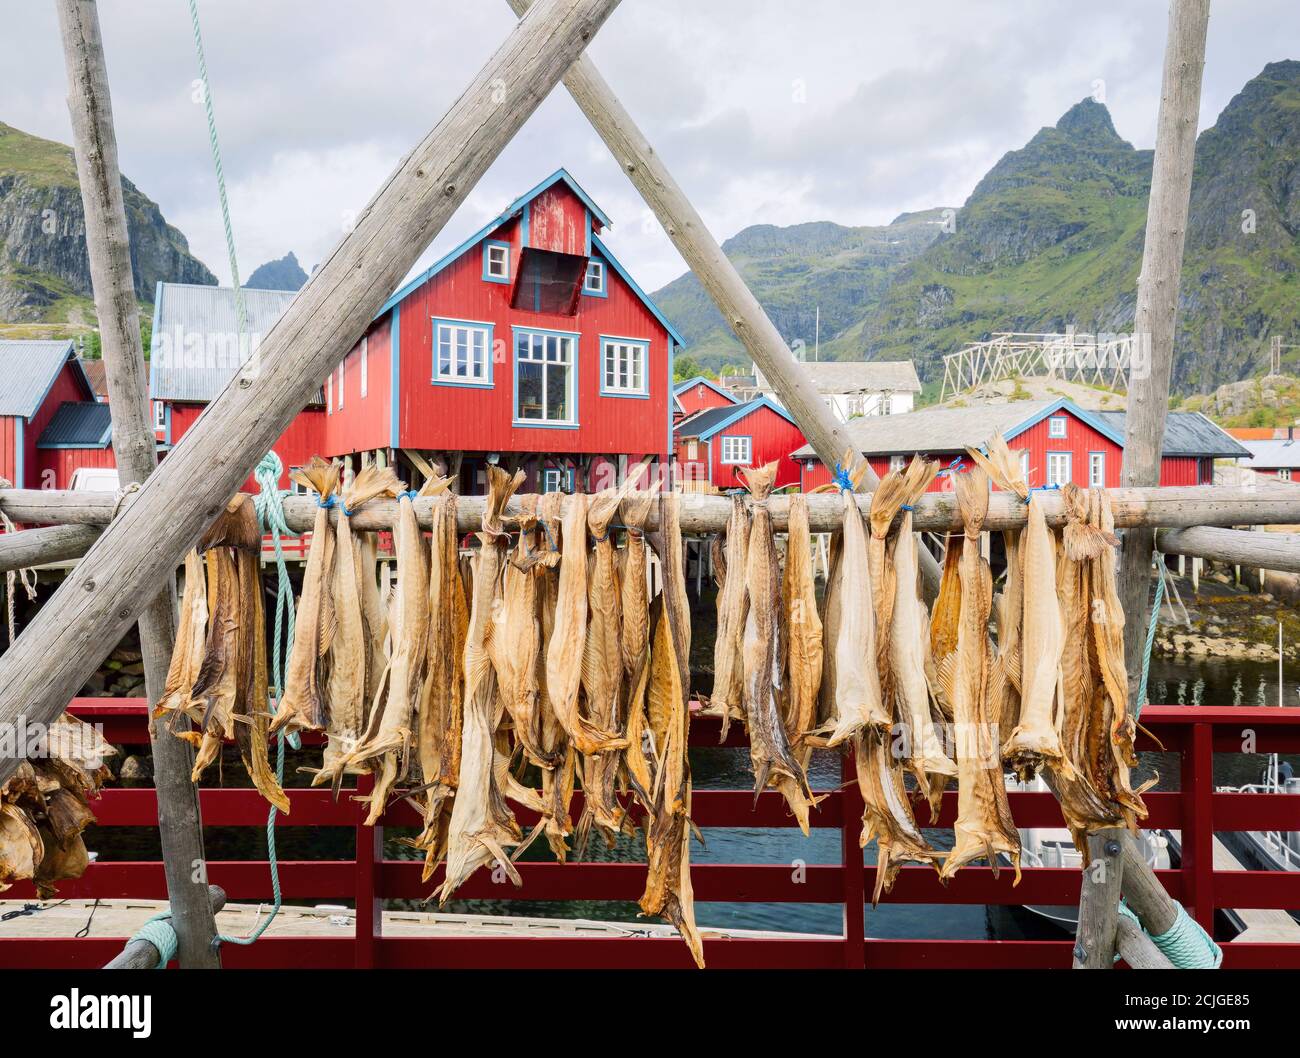 Séchage de la morue du poisson-fond dans un authentique village de pêche traditionnel avec des maisons traditionnelles de rorbu rouge en été dans le fjord norvégien. Îles Lofoten, Norvège. Banque D'Images